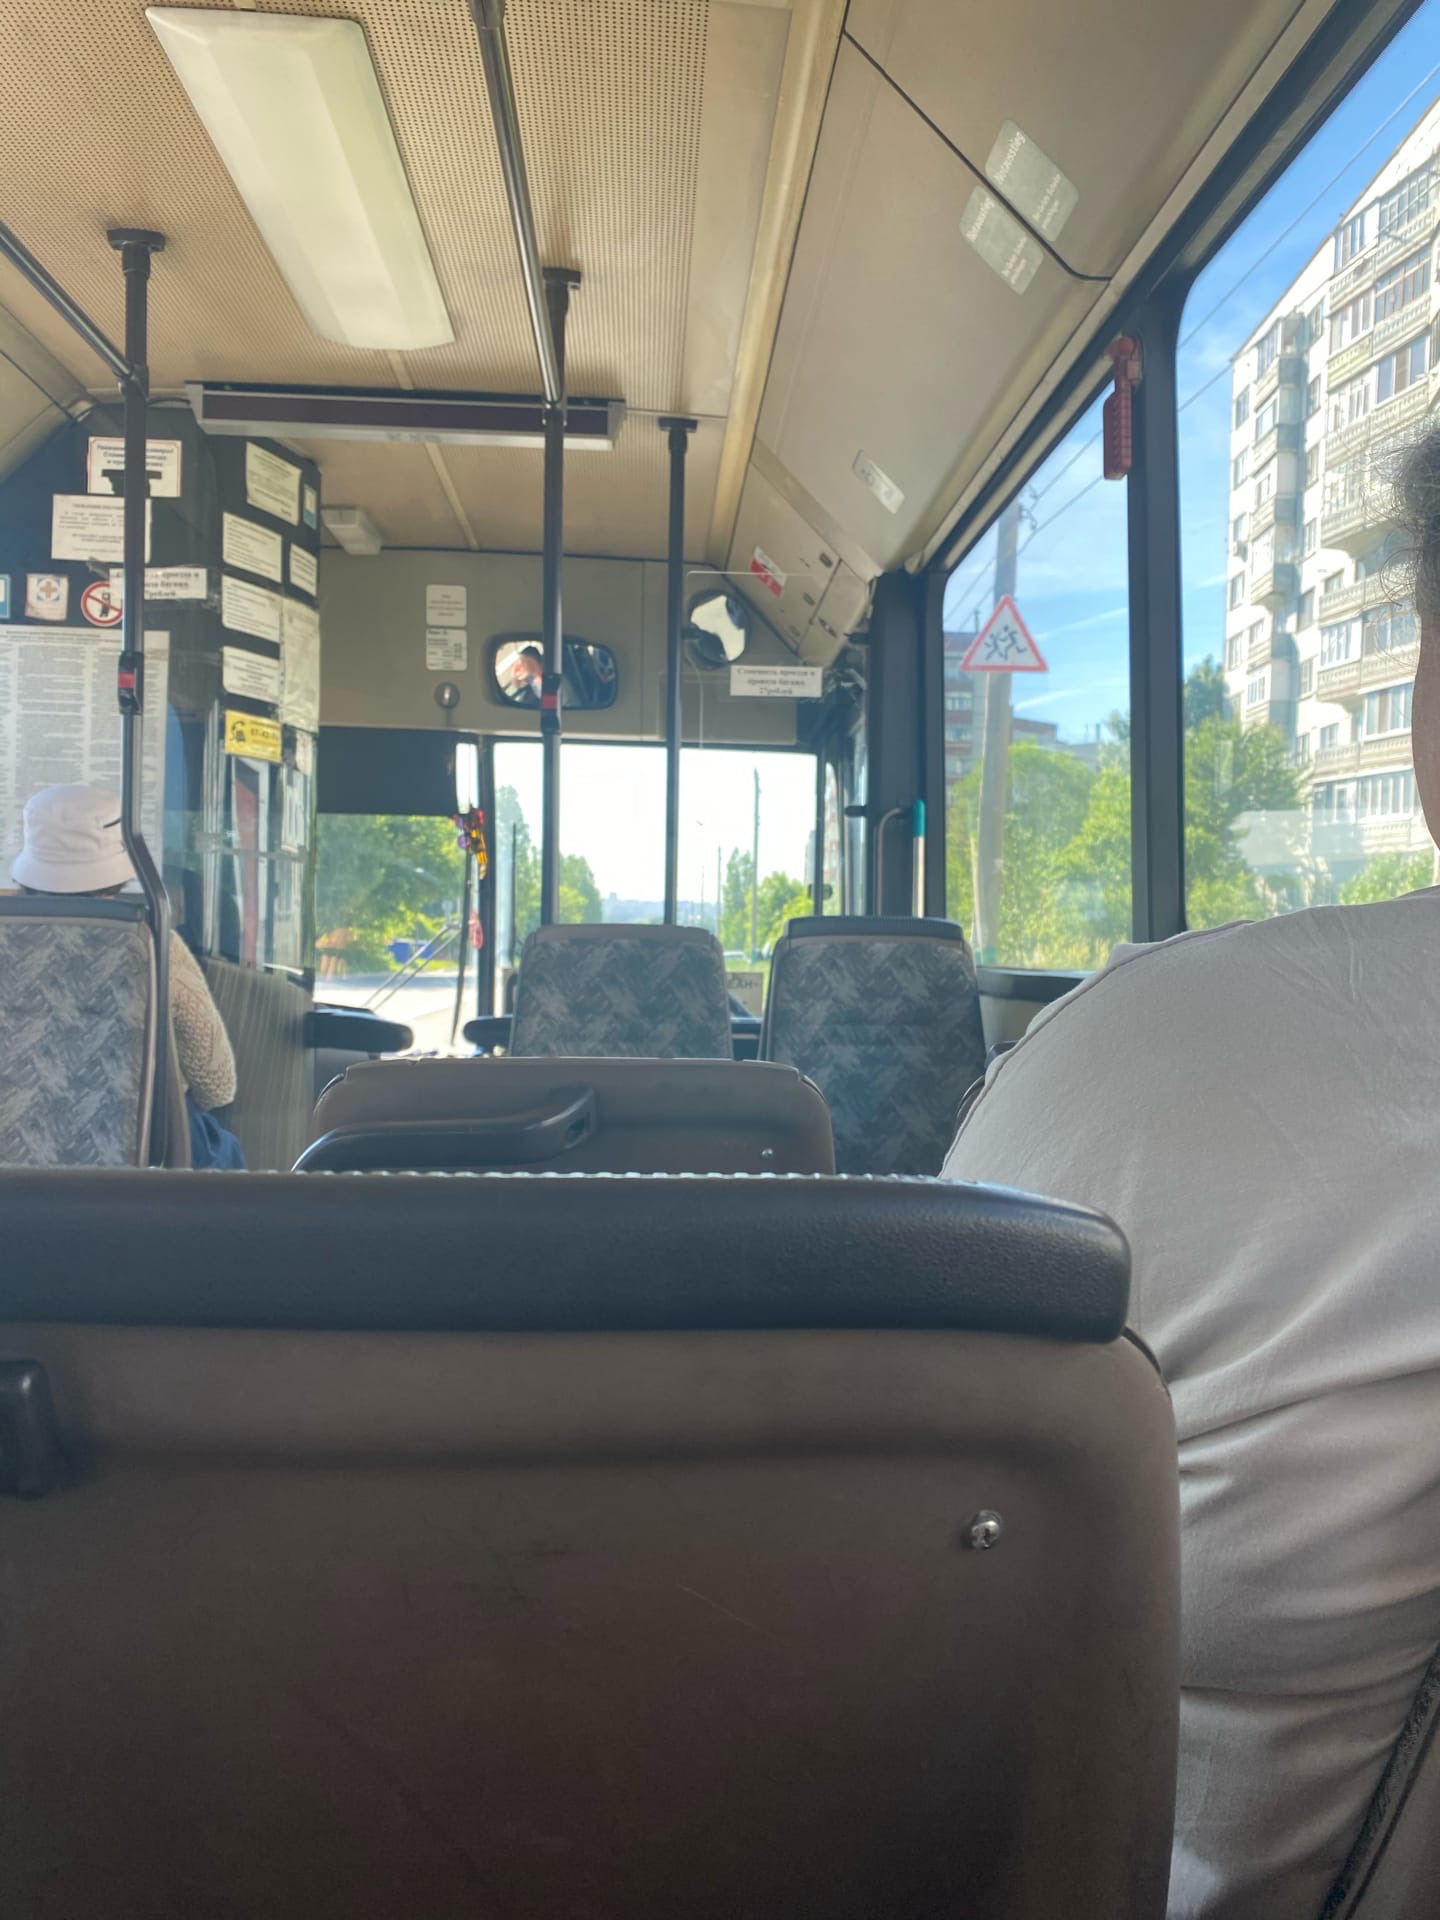 19 июня в Пензе микроавтобус № 68 изменит маршрут